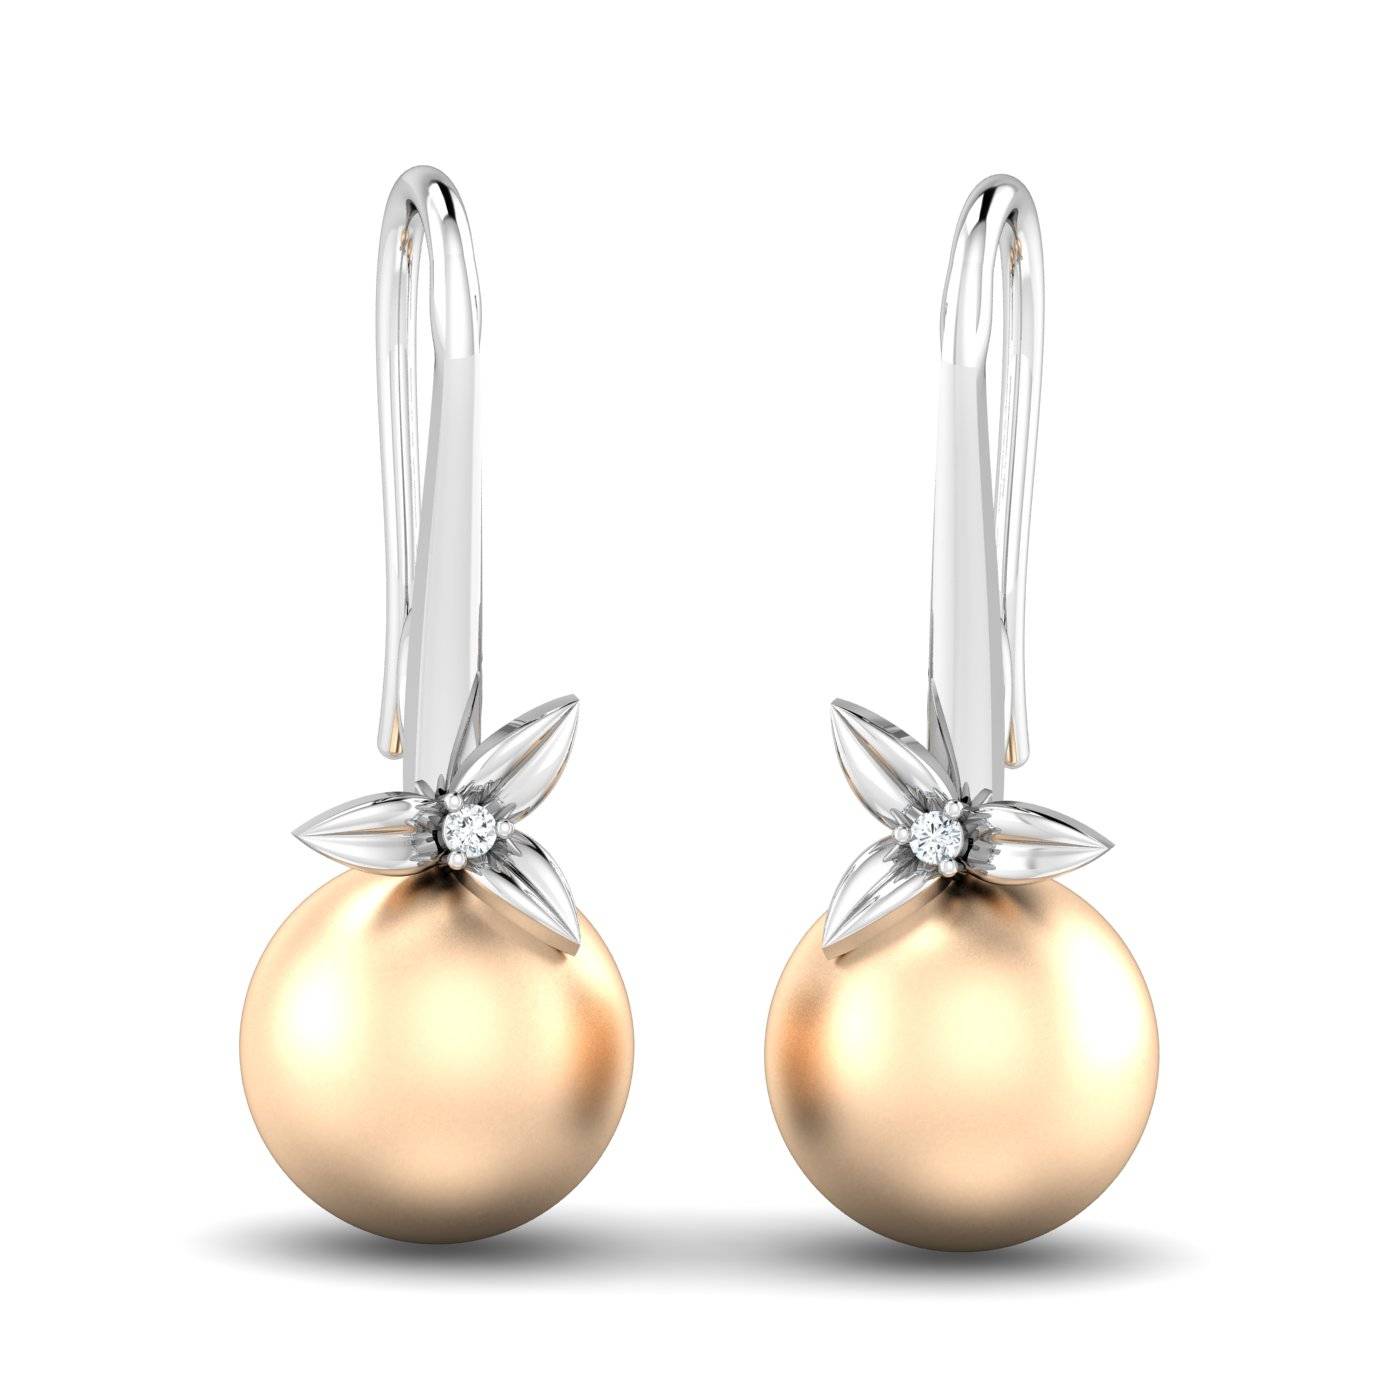 Avishag Pearl Earrings